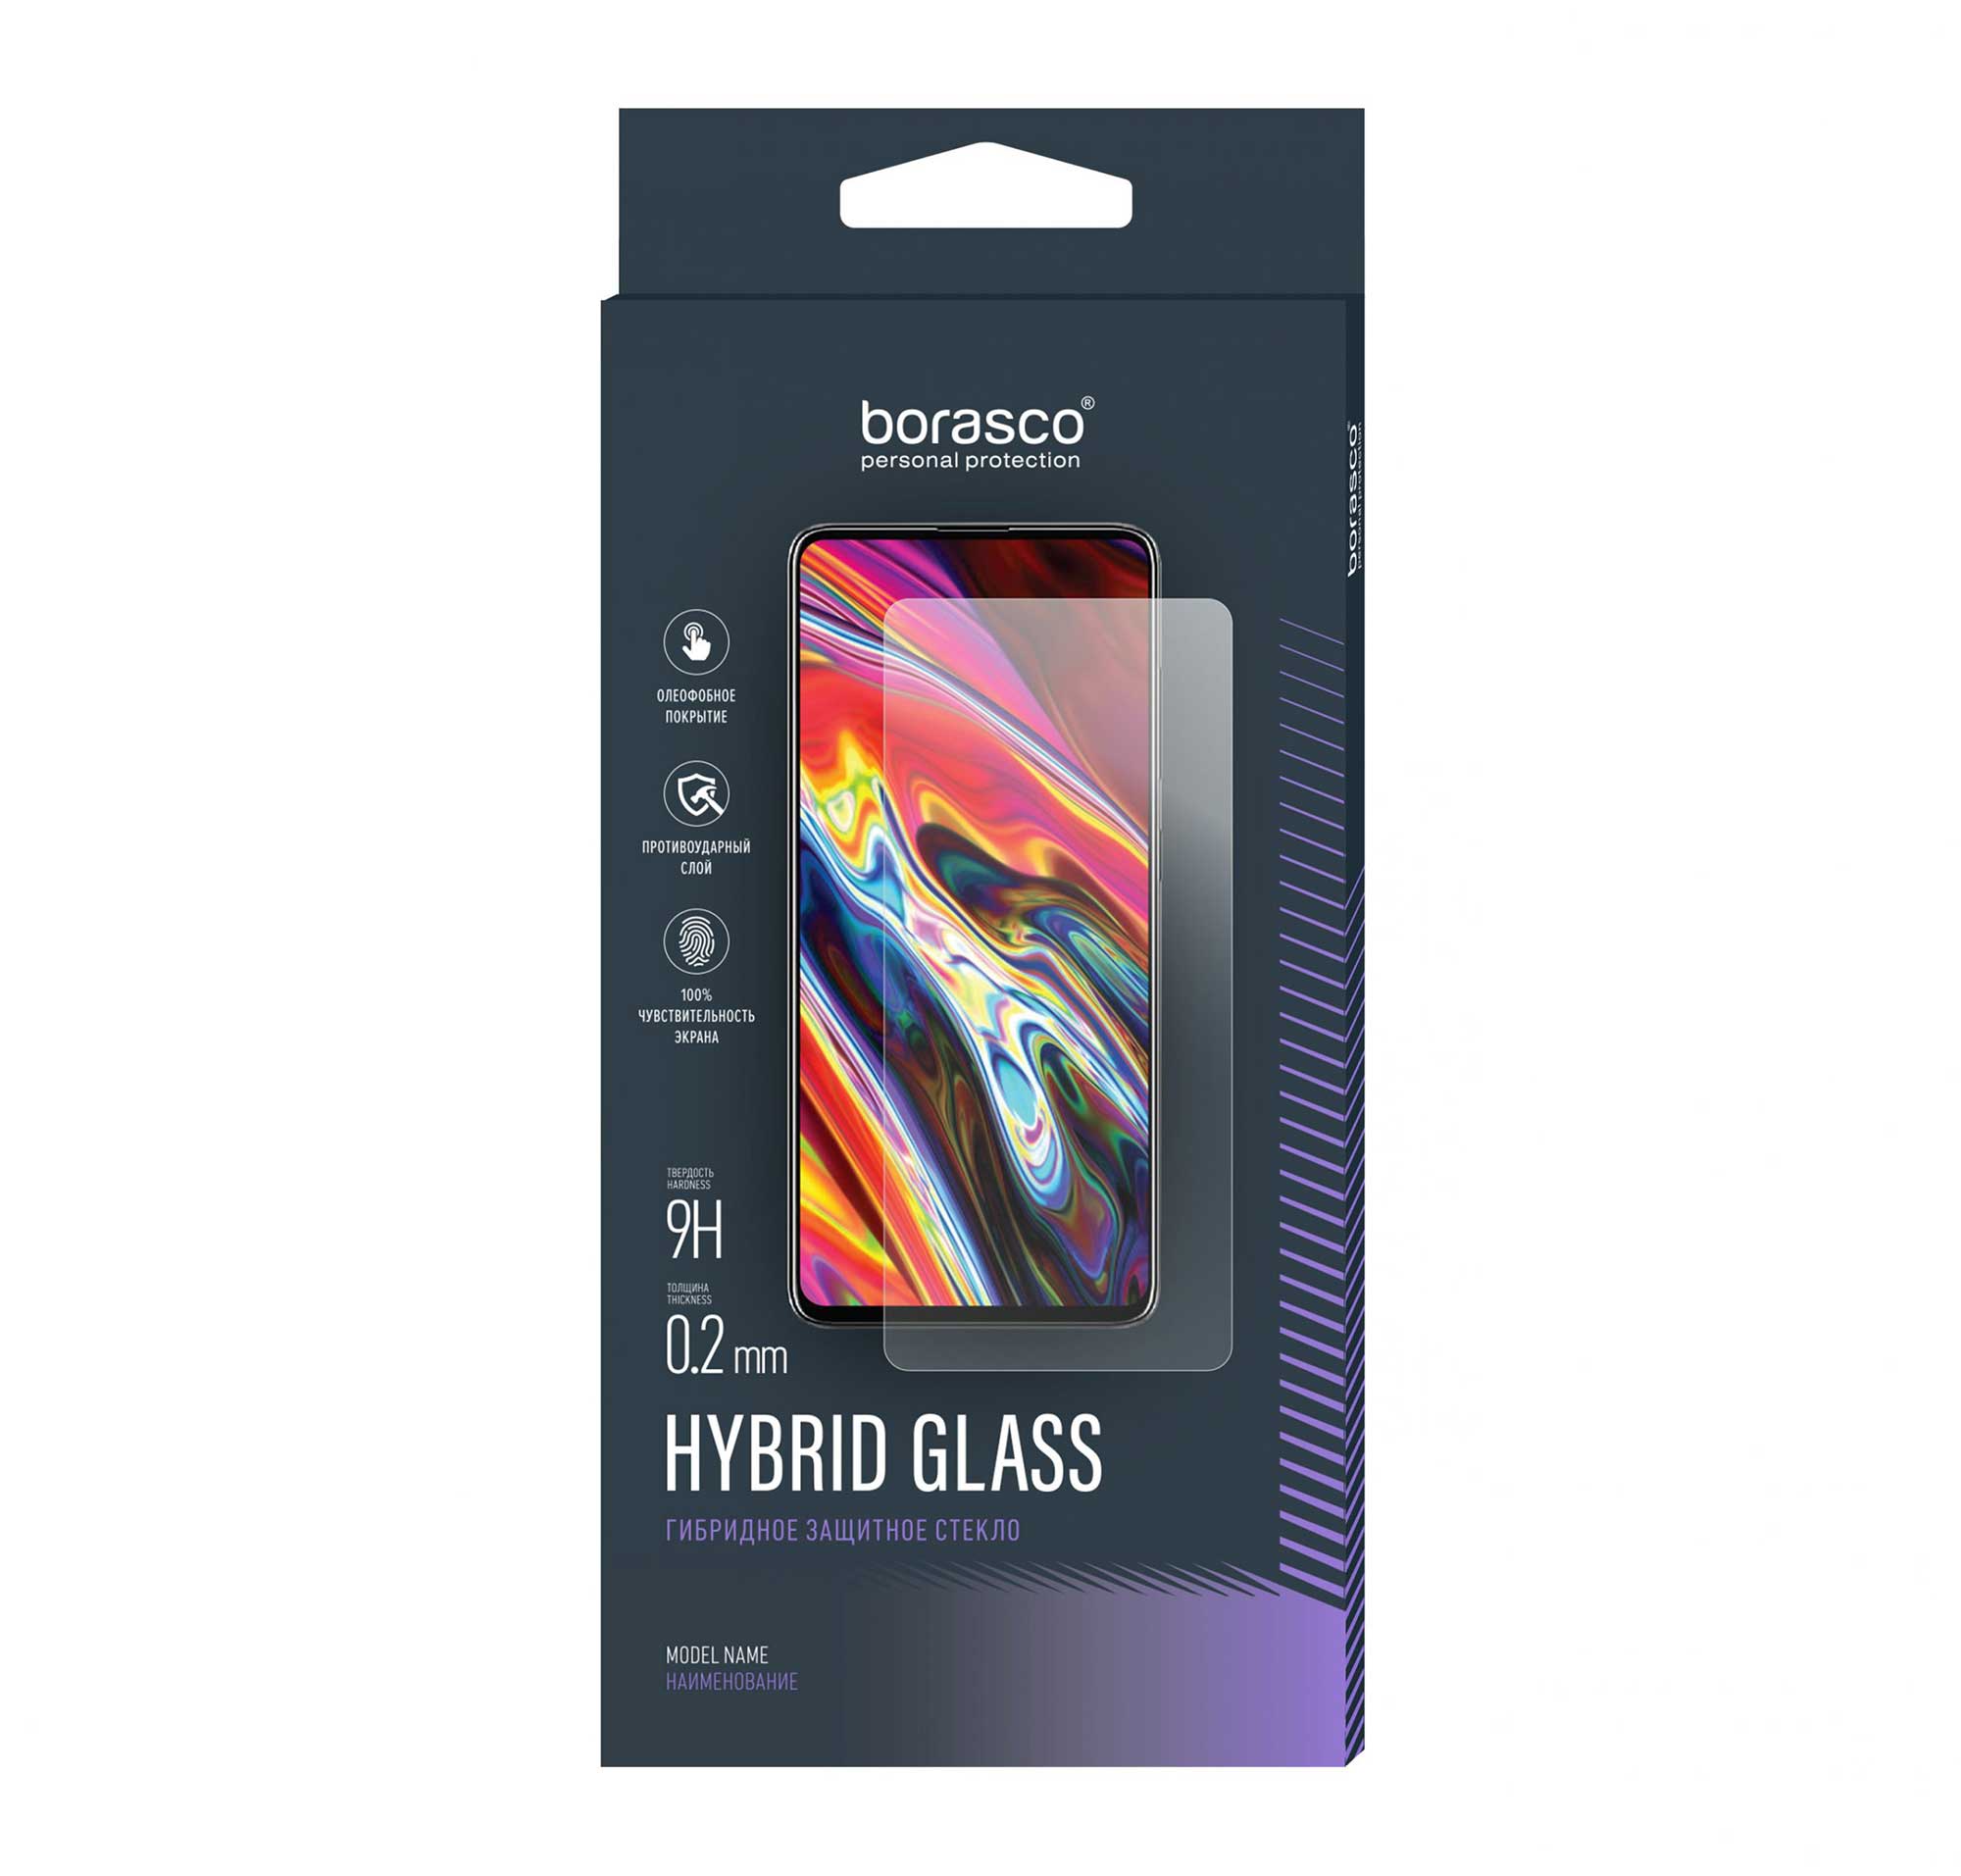 Защитное стекло BoraSCO Hybrid Glass для Vivo Y12s/ Y20/ Y21/ Y21s/ Y33s защитное стекло для объектива камеры vivo y01 закаленное стекло для vivo y01 y11s y33s y30g y72 y31 y20 y20i y21 стекло для vivo y01